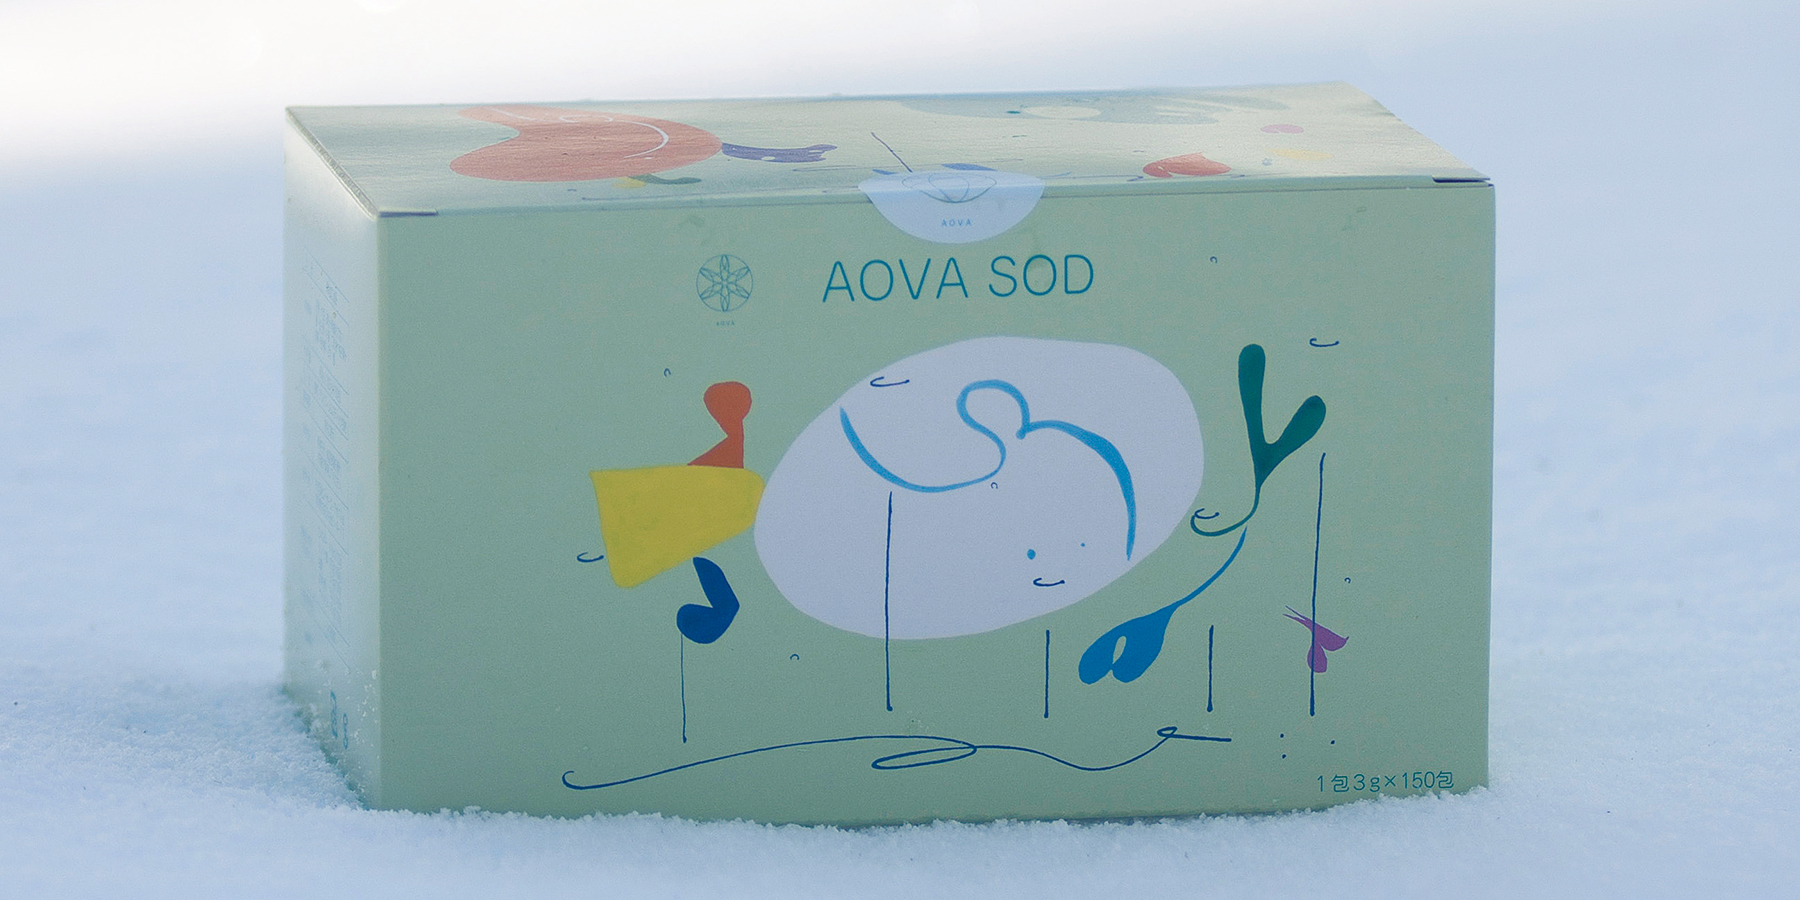 雪の上に置かれたAOVA SODの箱